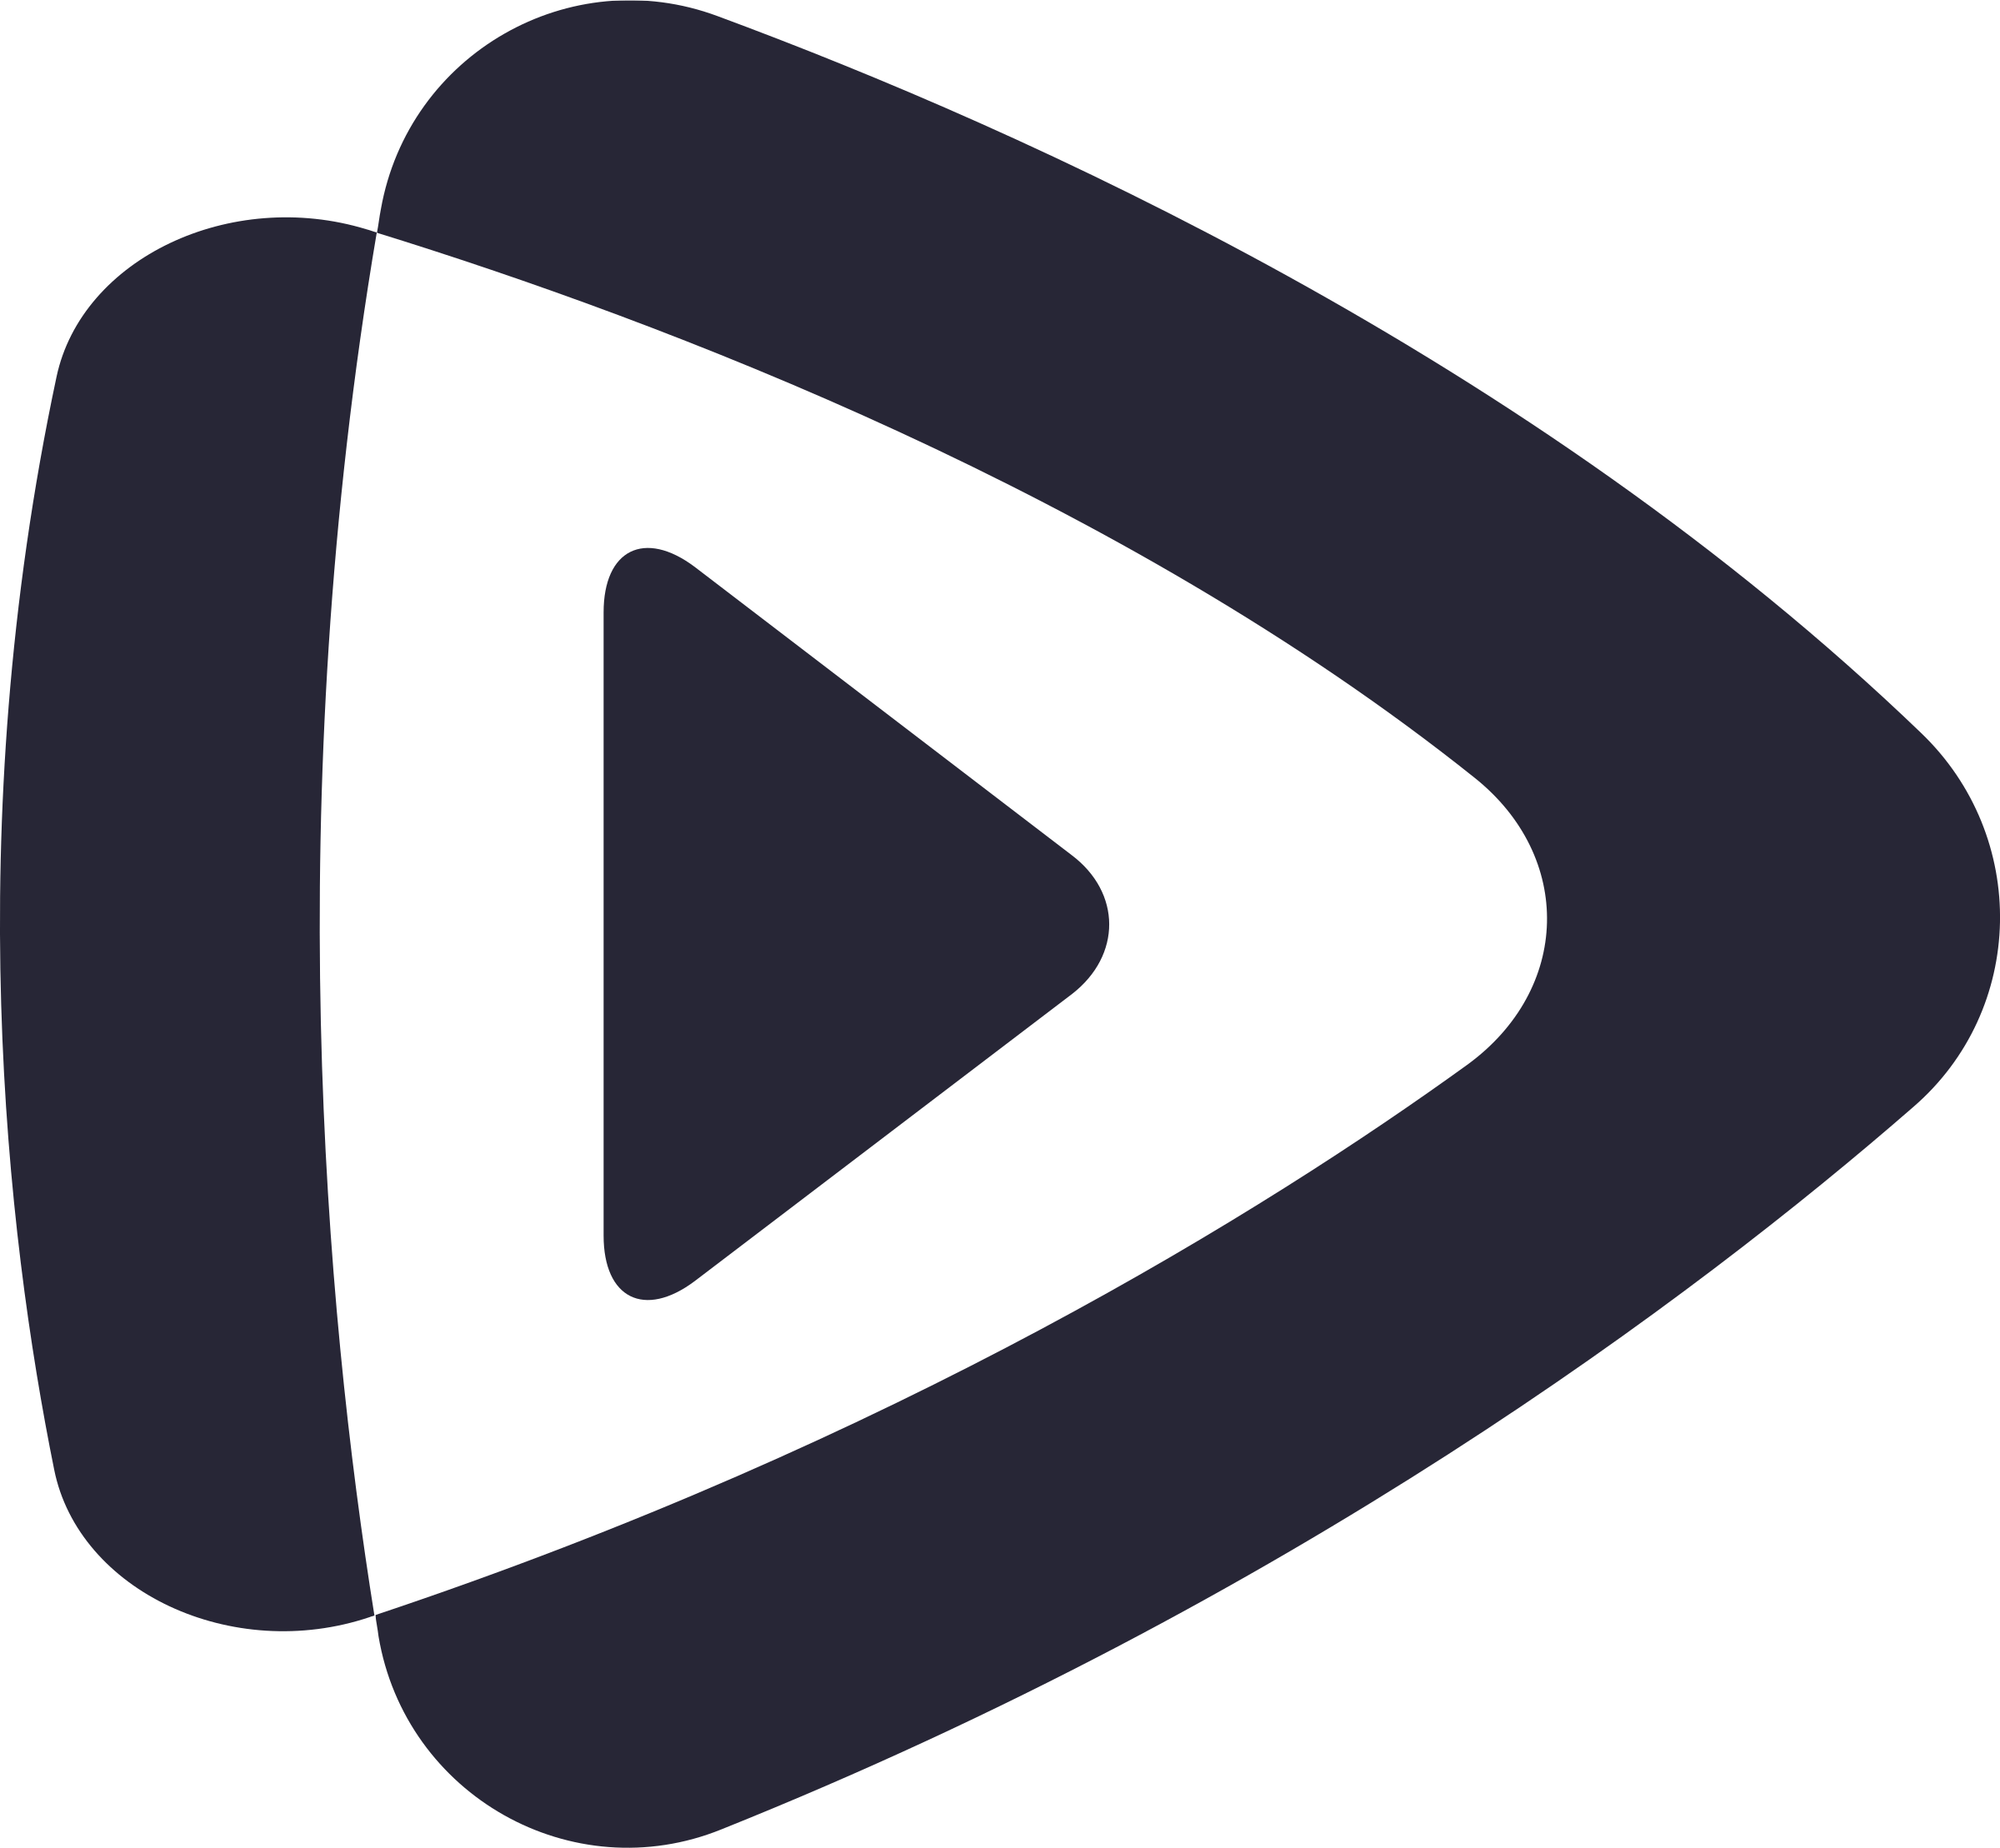 Tải xuống logo Tencent Video của chúng tôi để có được quyền truy cập vào hàng ngàn bộ phim và chương trình truyền hình cực kỳ hấp dẫn. Thỏa lòng đam mê phim ảnh của bạn với dịch vụ của chúng tôi!